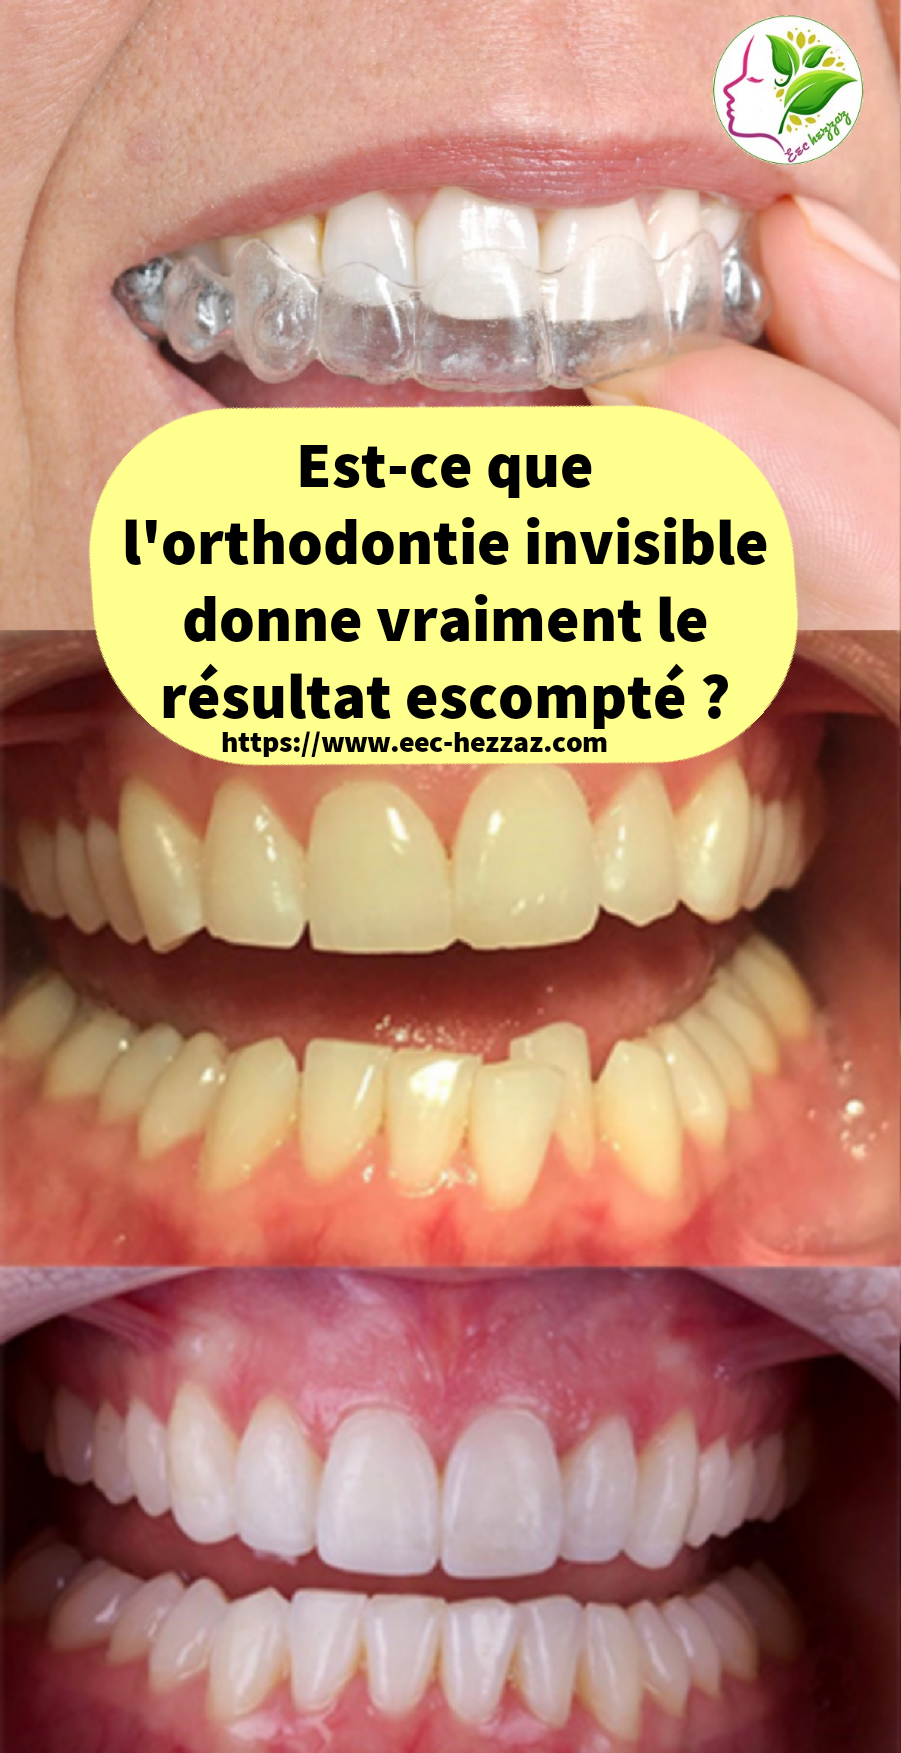 Est-ce que l'orthodontie invisible donne vraiment le résultat escompté ?